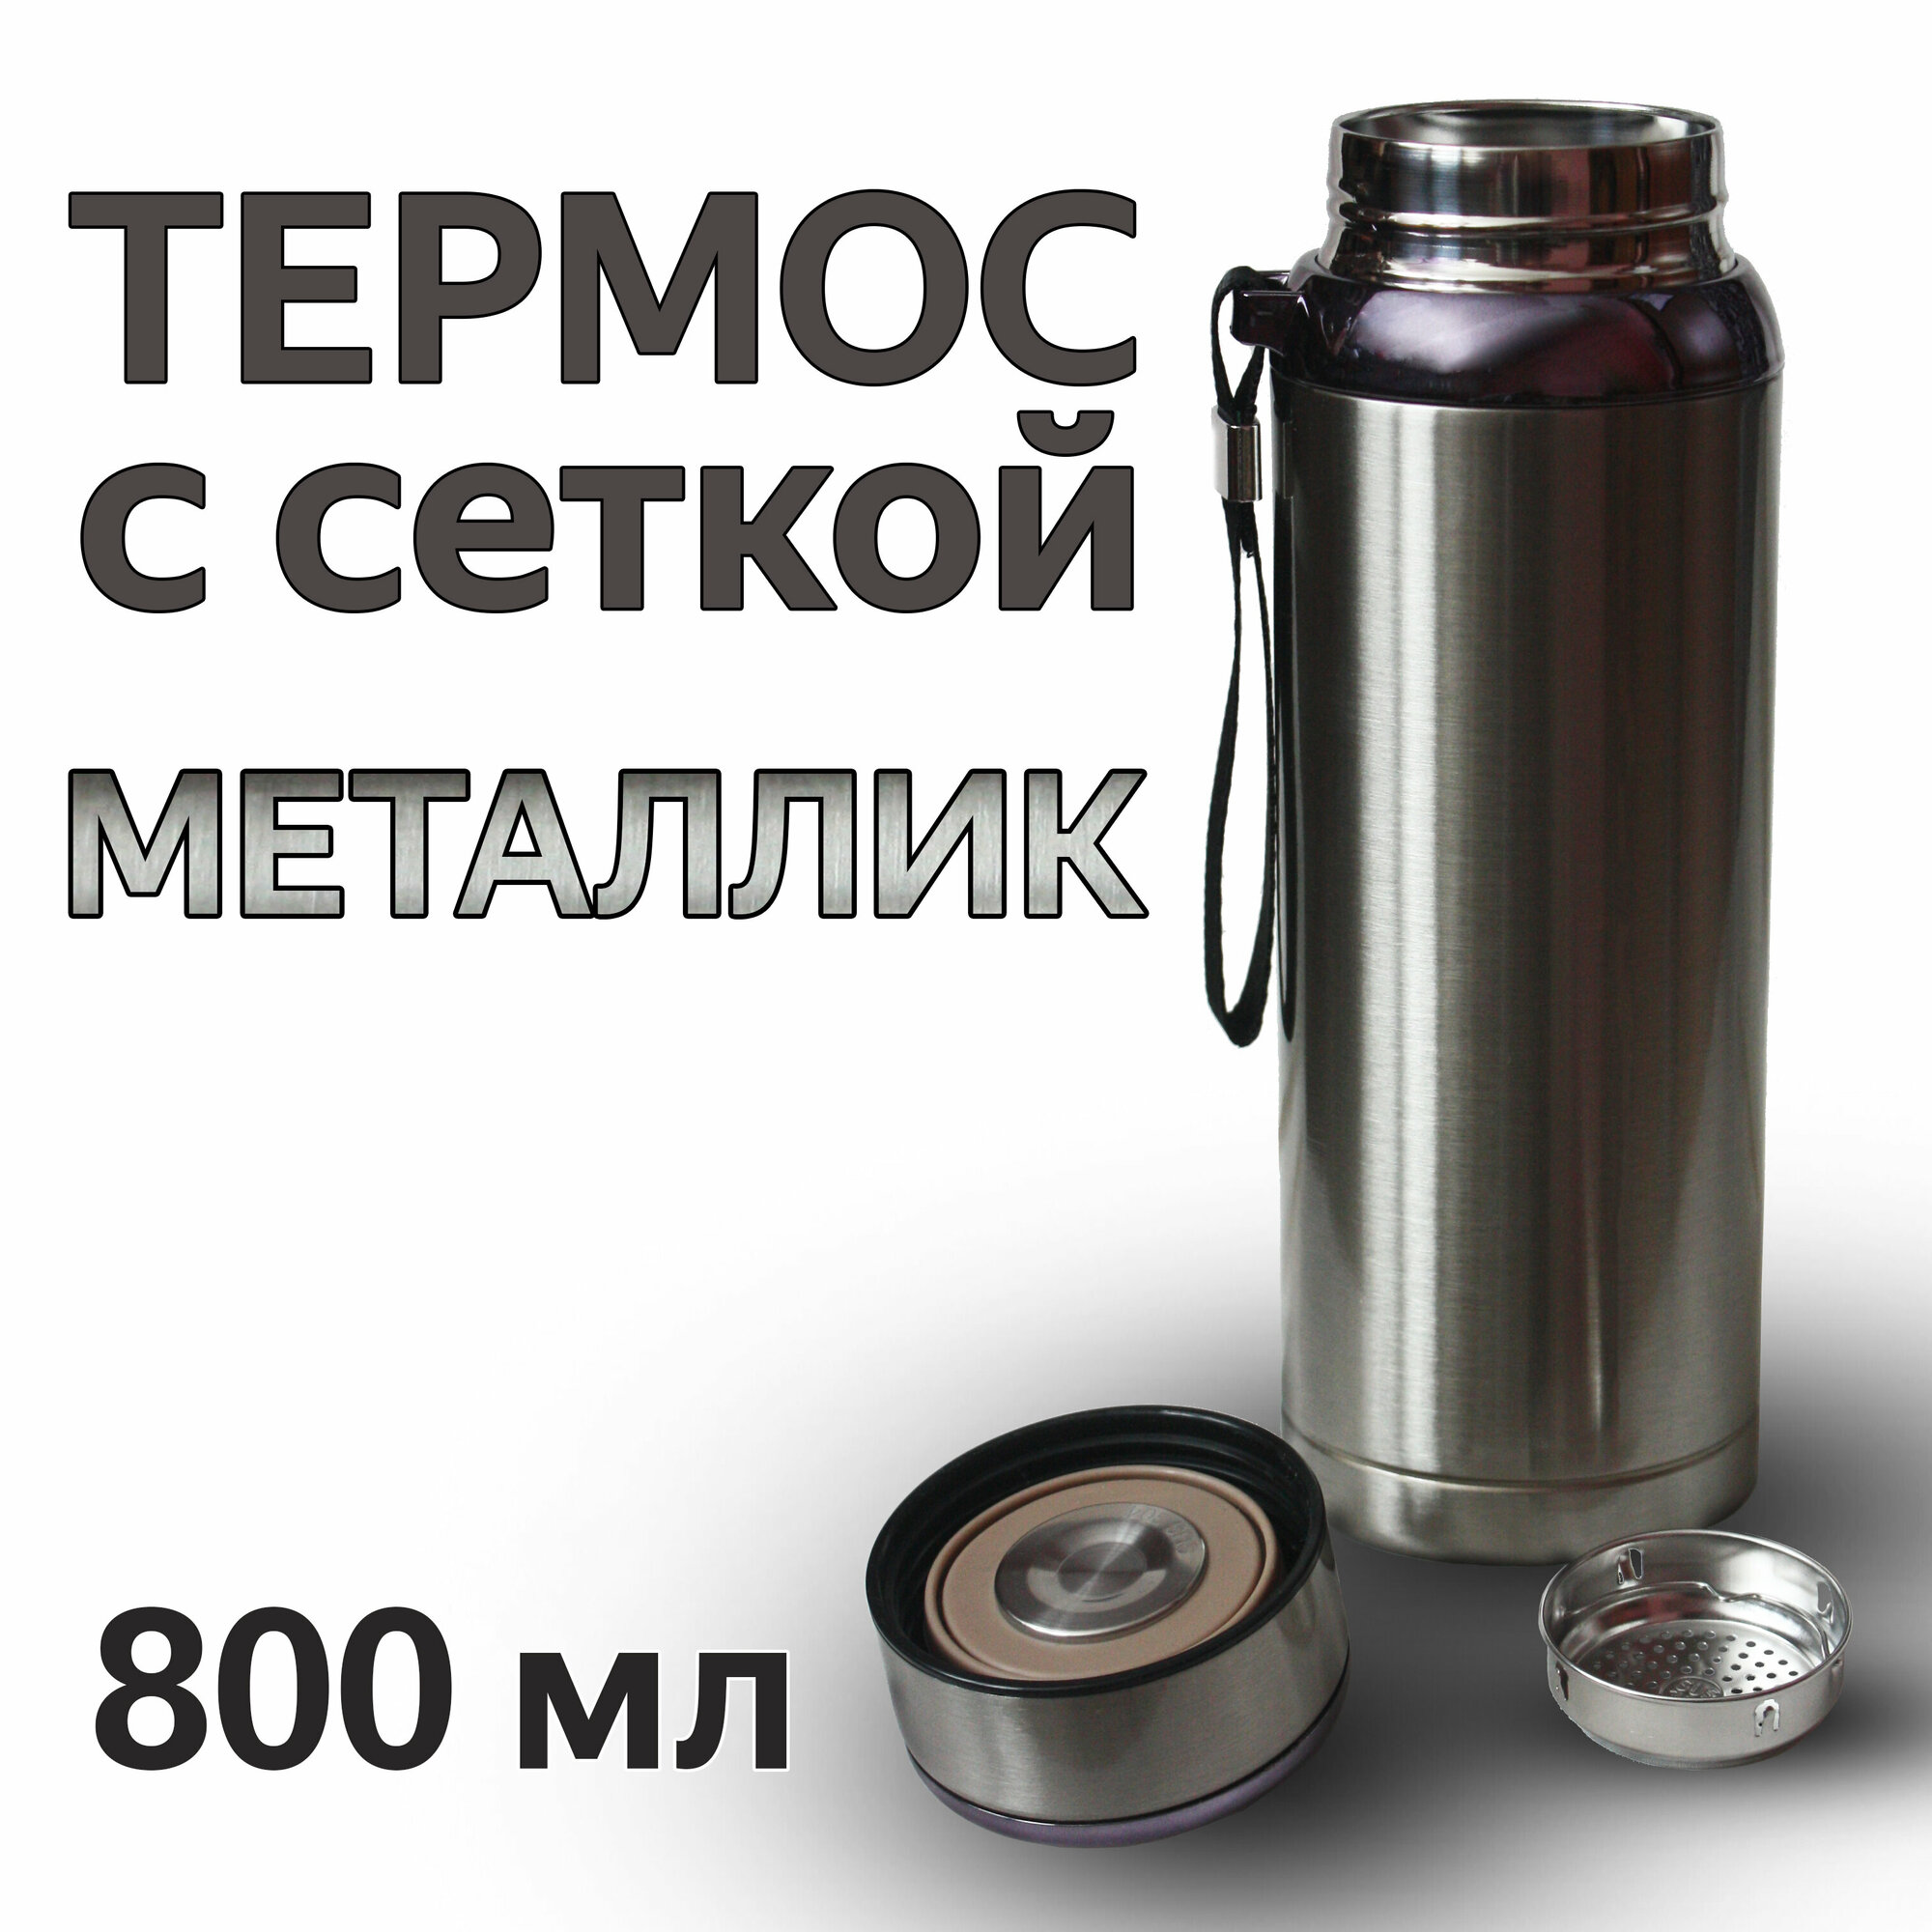 Термос для напитков из нержавеющей стали со съемной сеткой-фильтром 800мл VACUUM цвет металлик